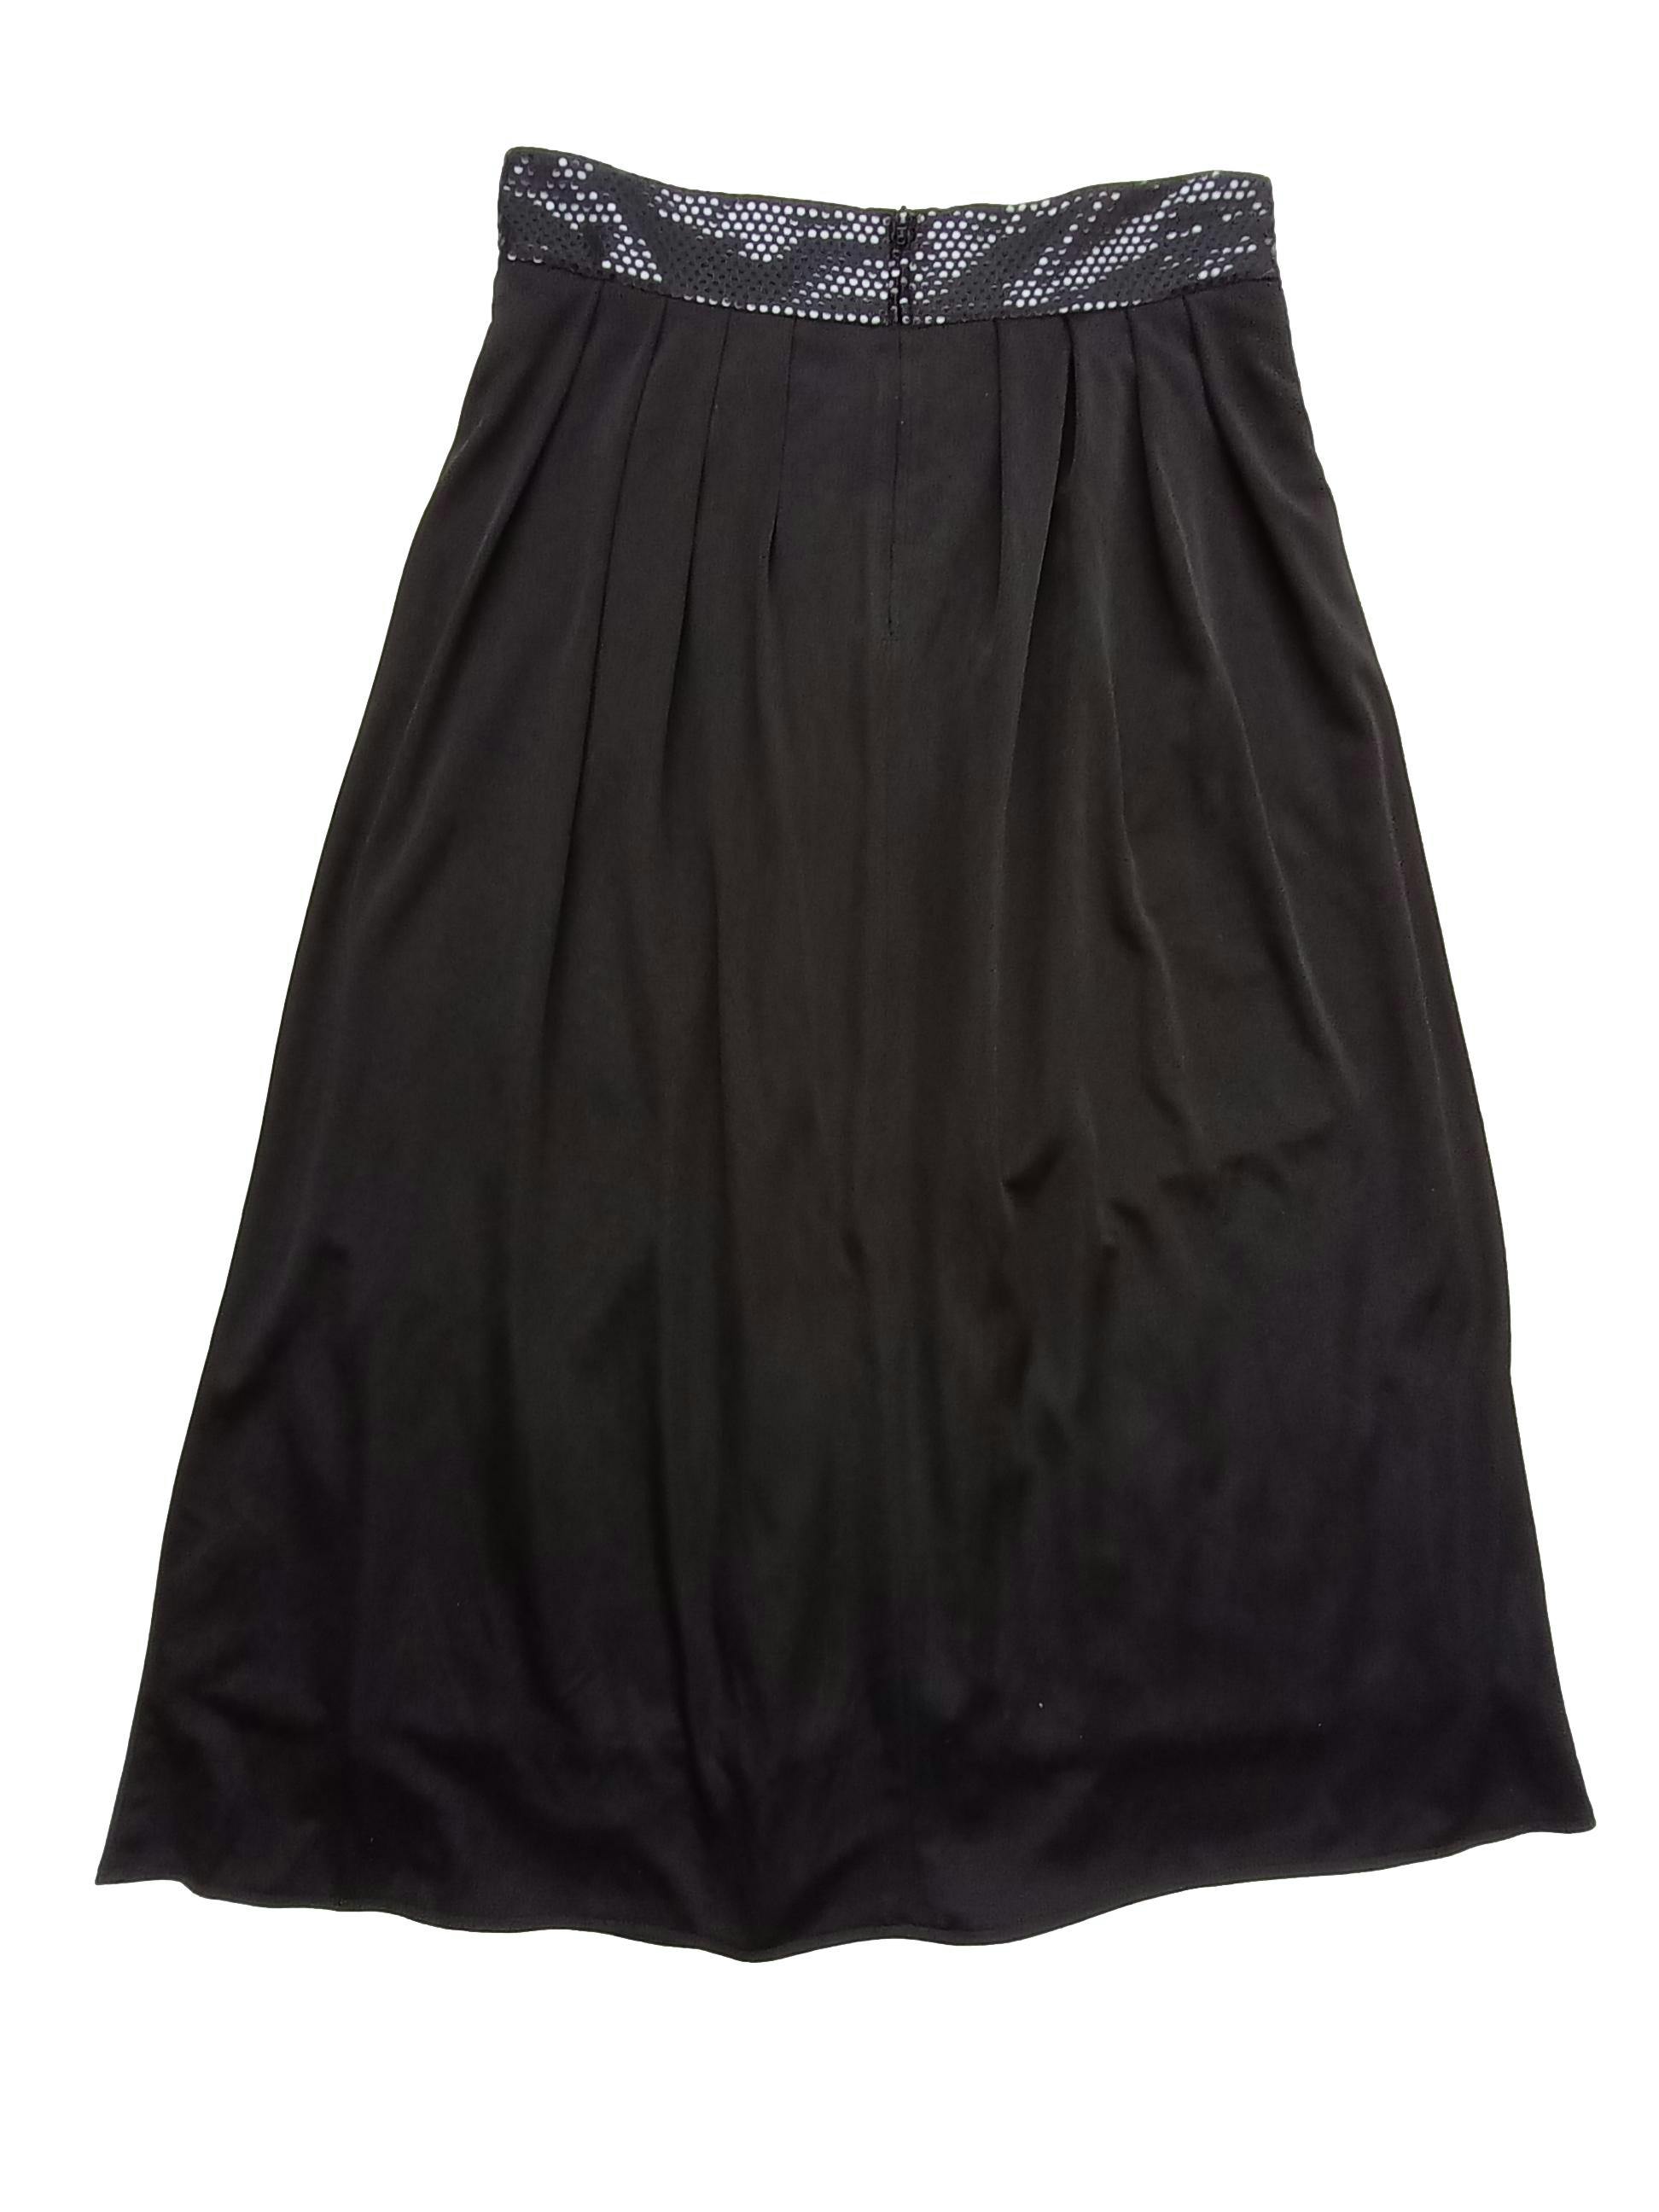 Falda vintage con cintura en V metálica, plieegues, forrada. Cintura: 80, Largo: 90